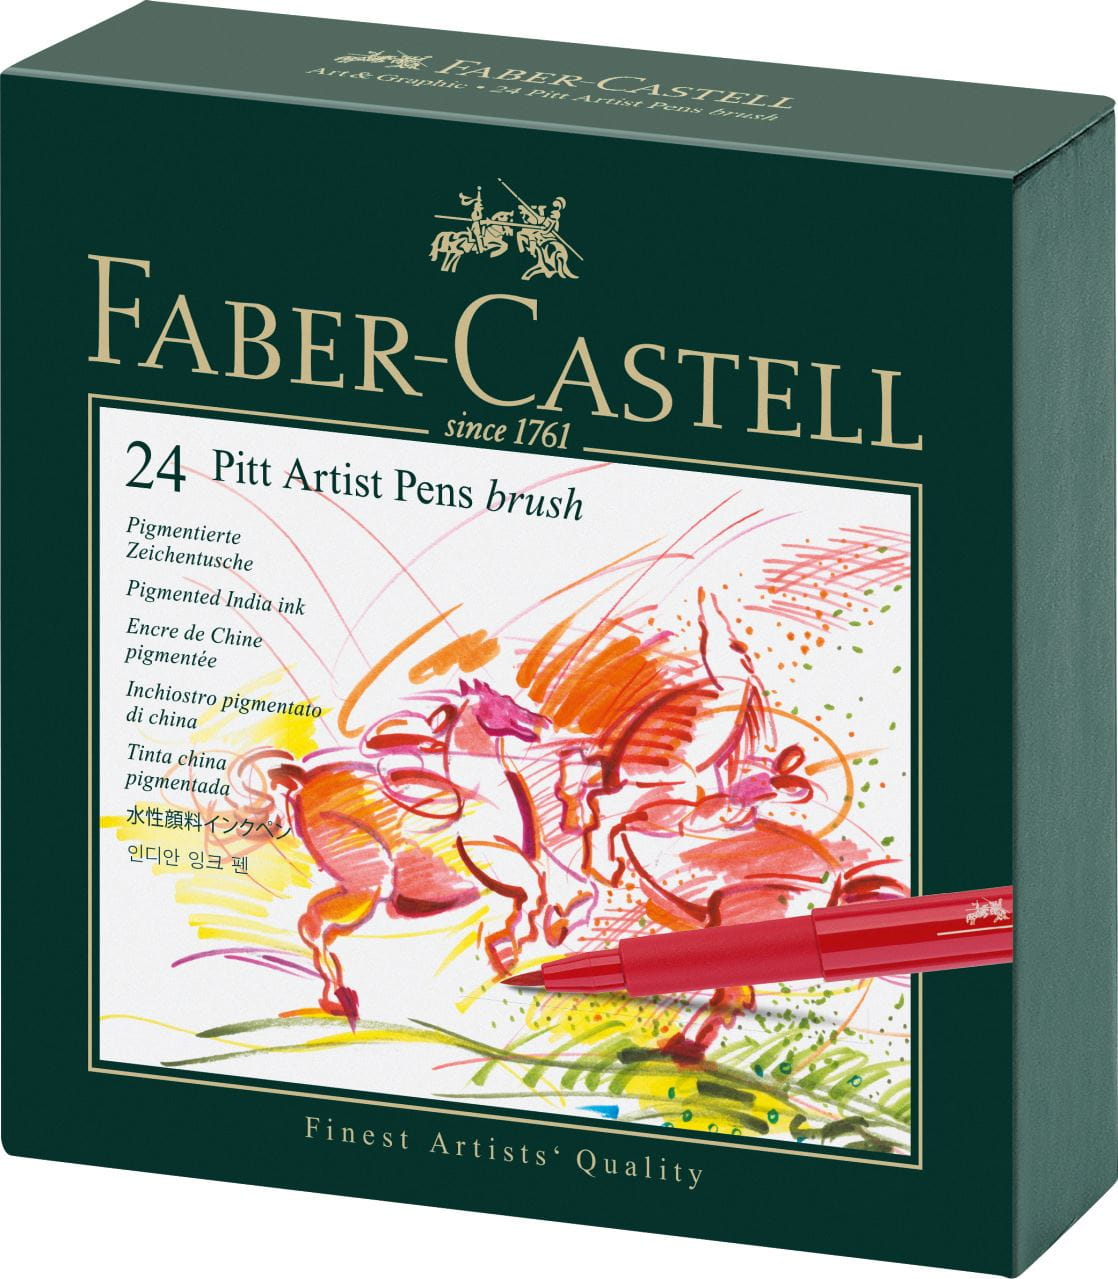 Faber-Castell - Pitt Artist Pen Brush India ink pen, studio box of 24